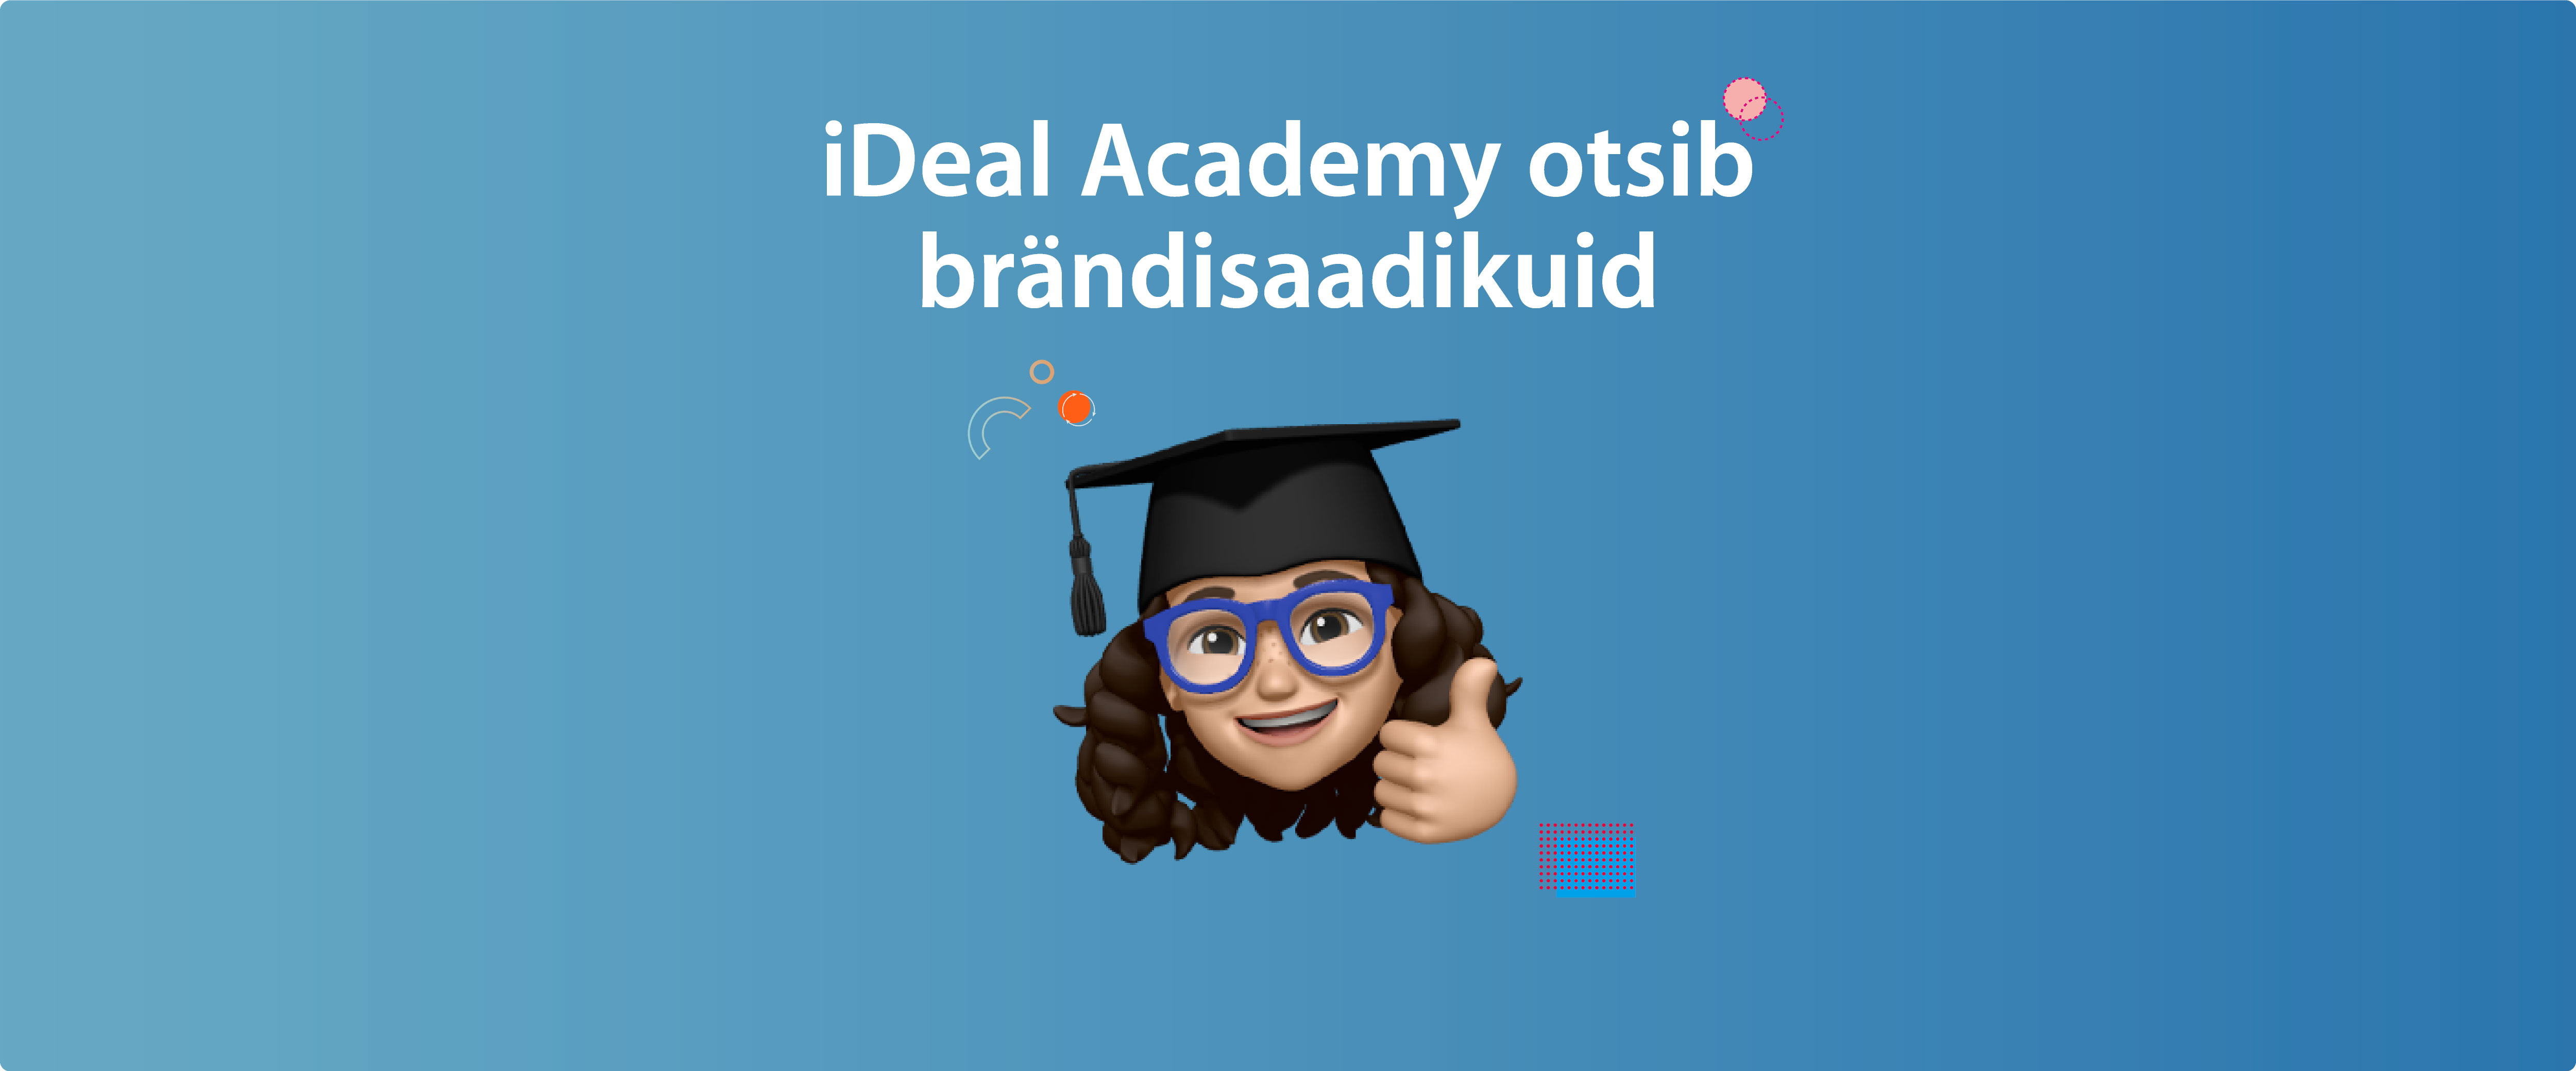 iDeal Academy – uus brändisaadikute programm üliõpilastele, mis muudab ülikooliaastad efektiivsemaks ja ägedamaks